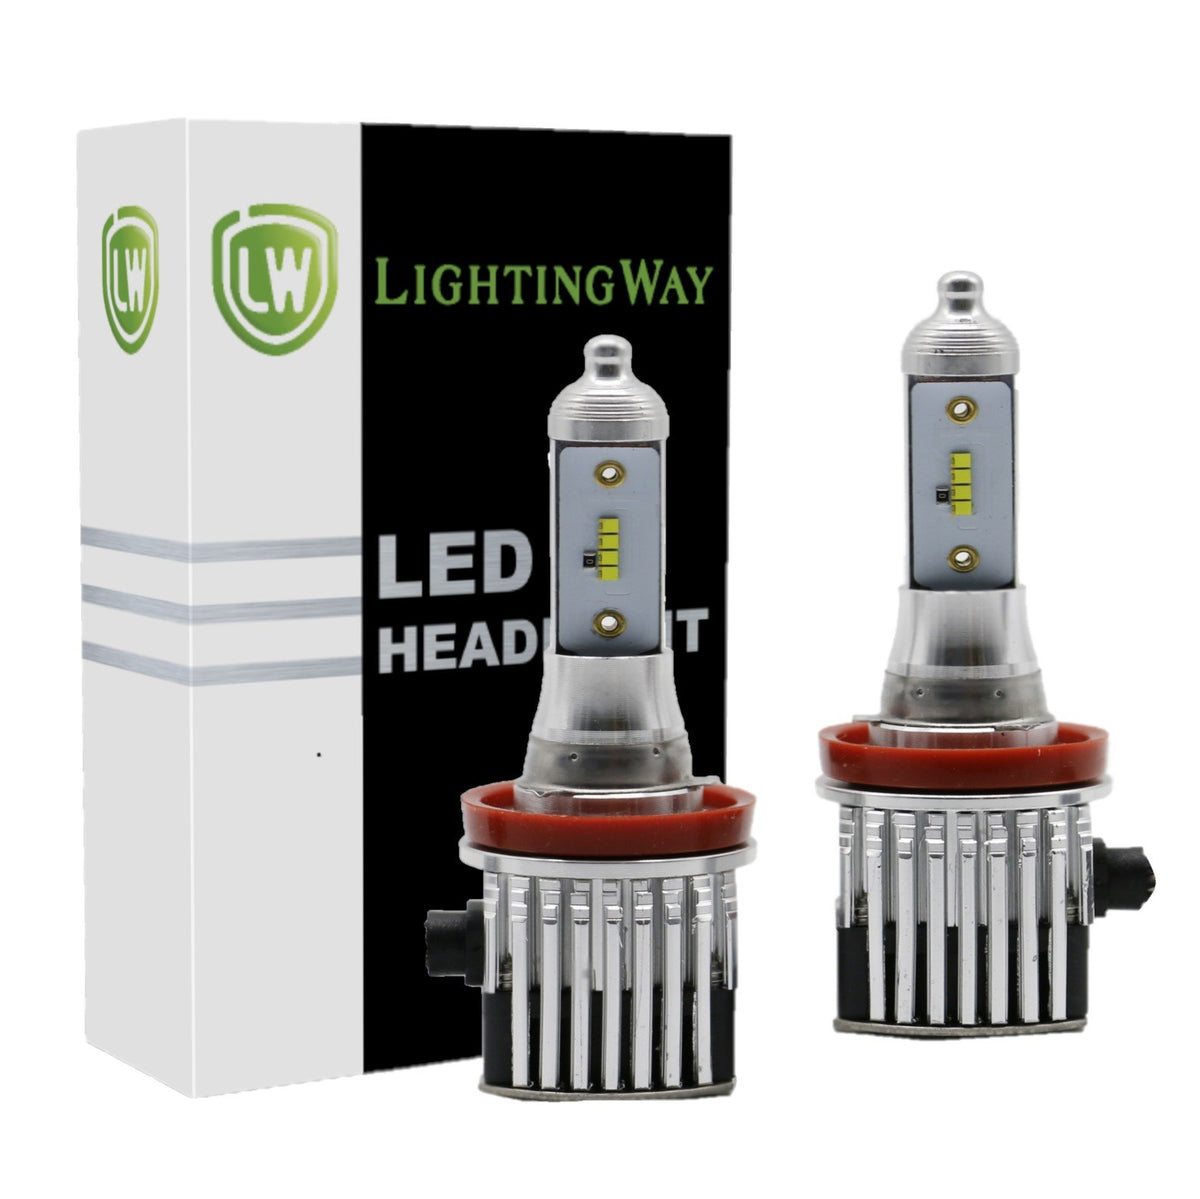 LED H9 6 LEDS HAUTE PUISSANCE BLANC - AUTOLED ®